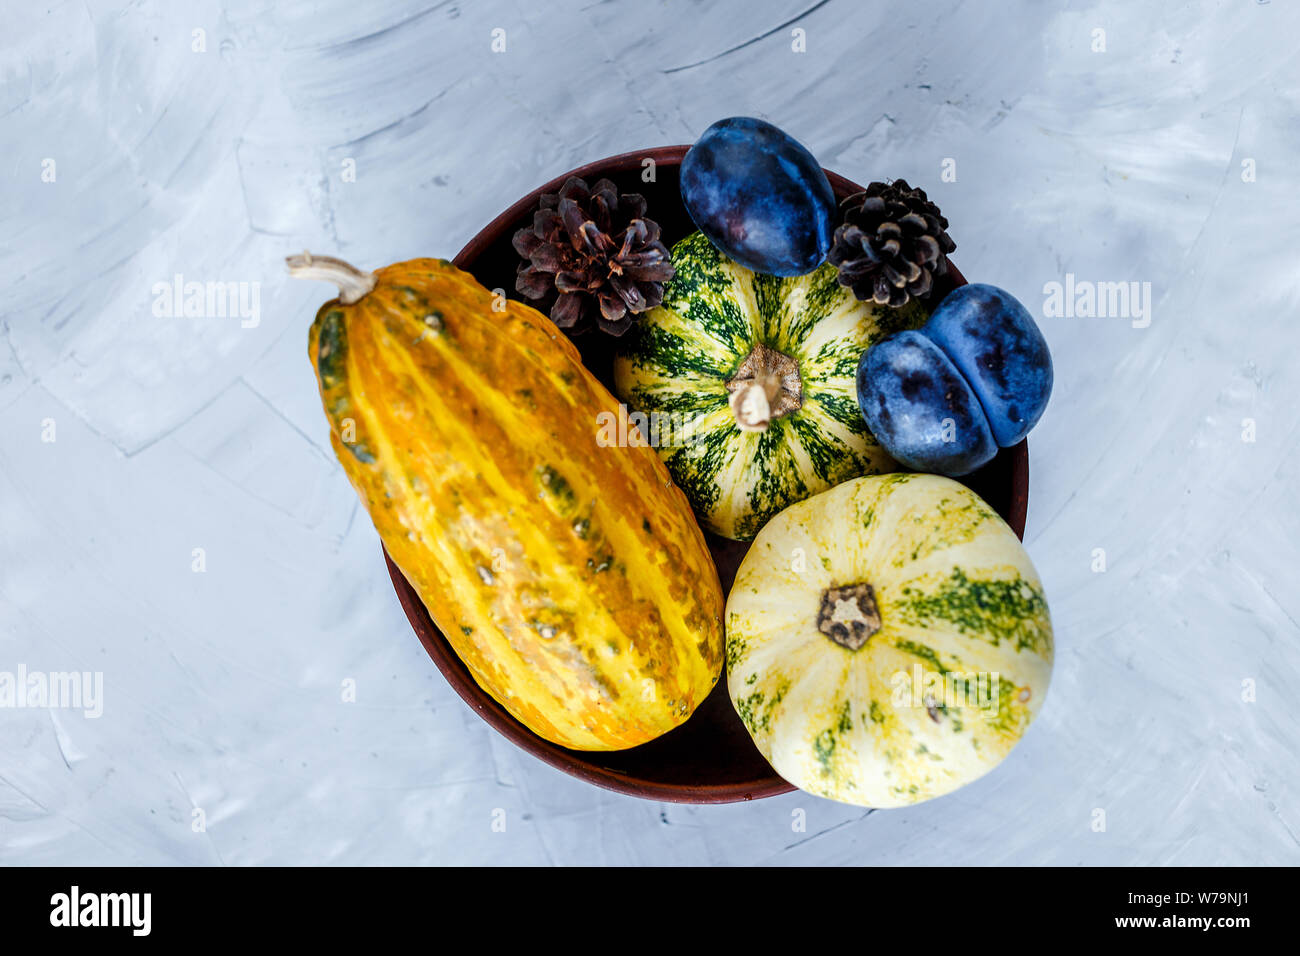 Thanksgiving Day Zusammensetzung von Gemüse und Obst auf grauem Hintergrund. Herbst Ernte Konzept. Kürbisse, Birnen, Pflaumen, Äpfel auf Tabelle, Ansicht von oben, Stockfoto